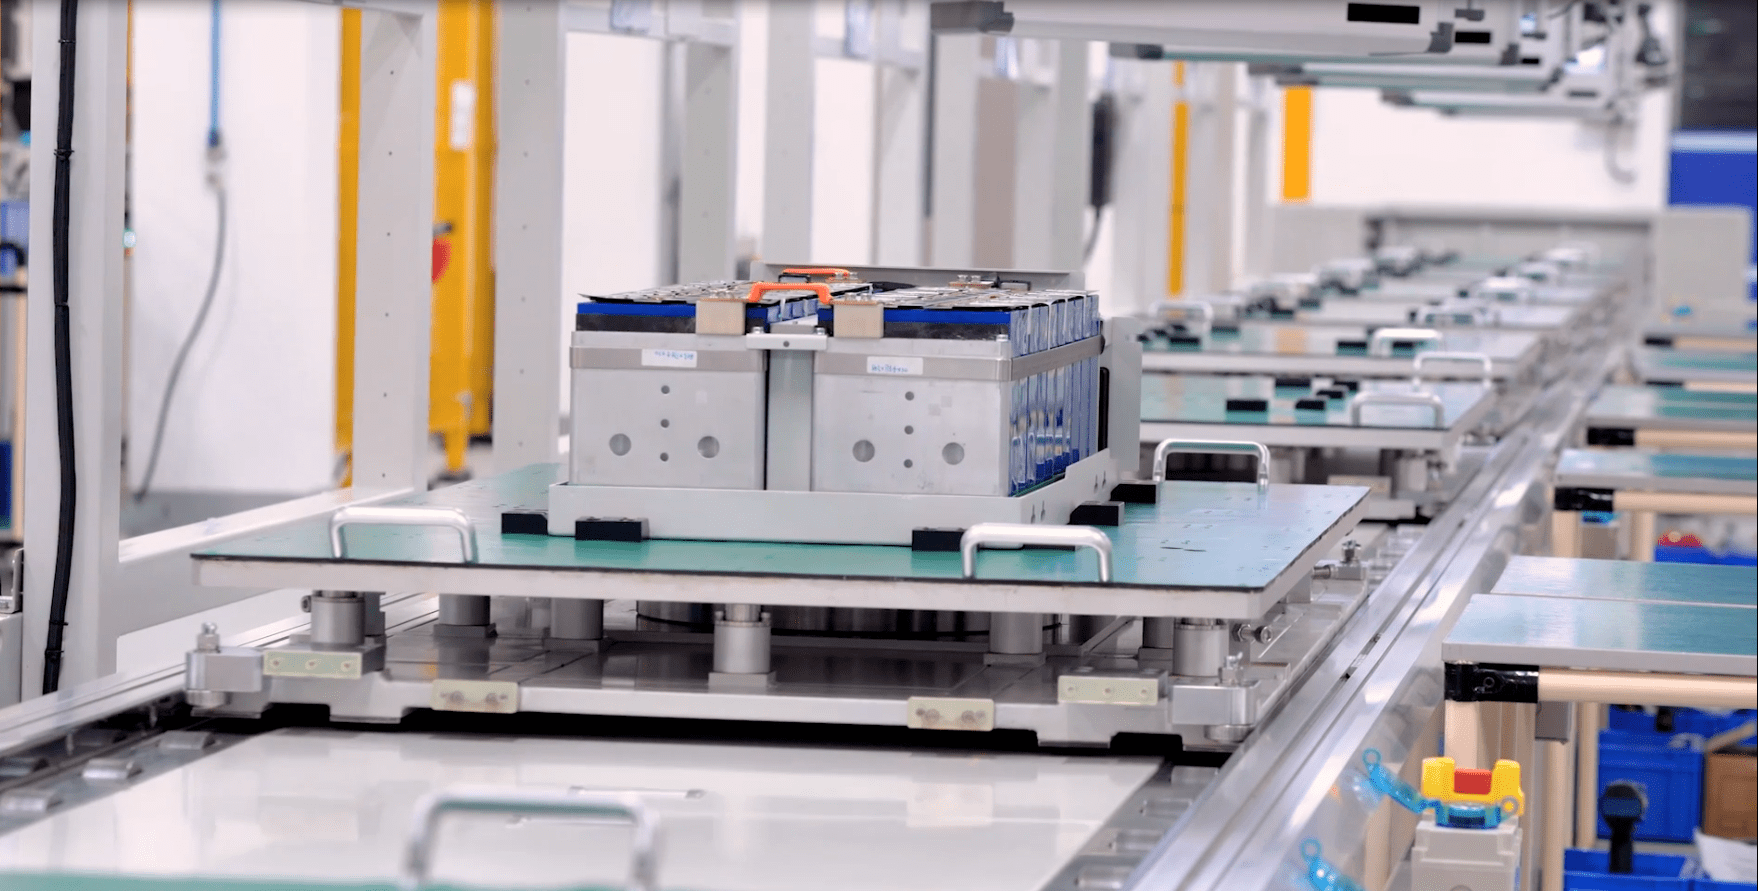 锂电池模组pack生产线是一种结合了人工操作和自动化技术的生产线系统